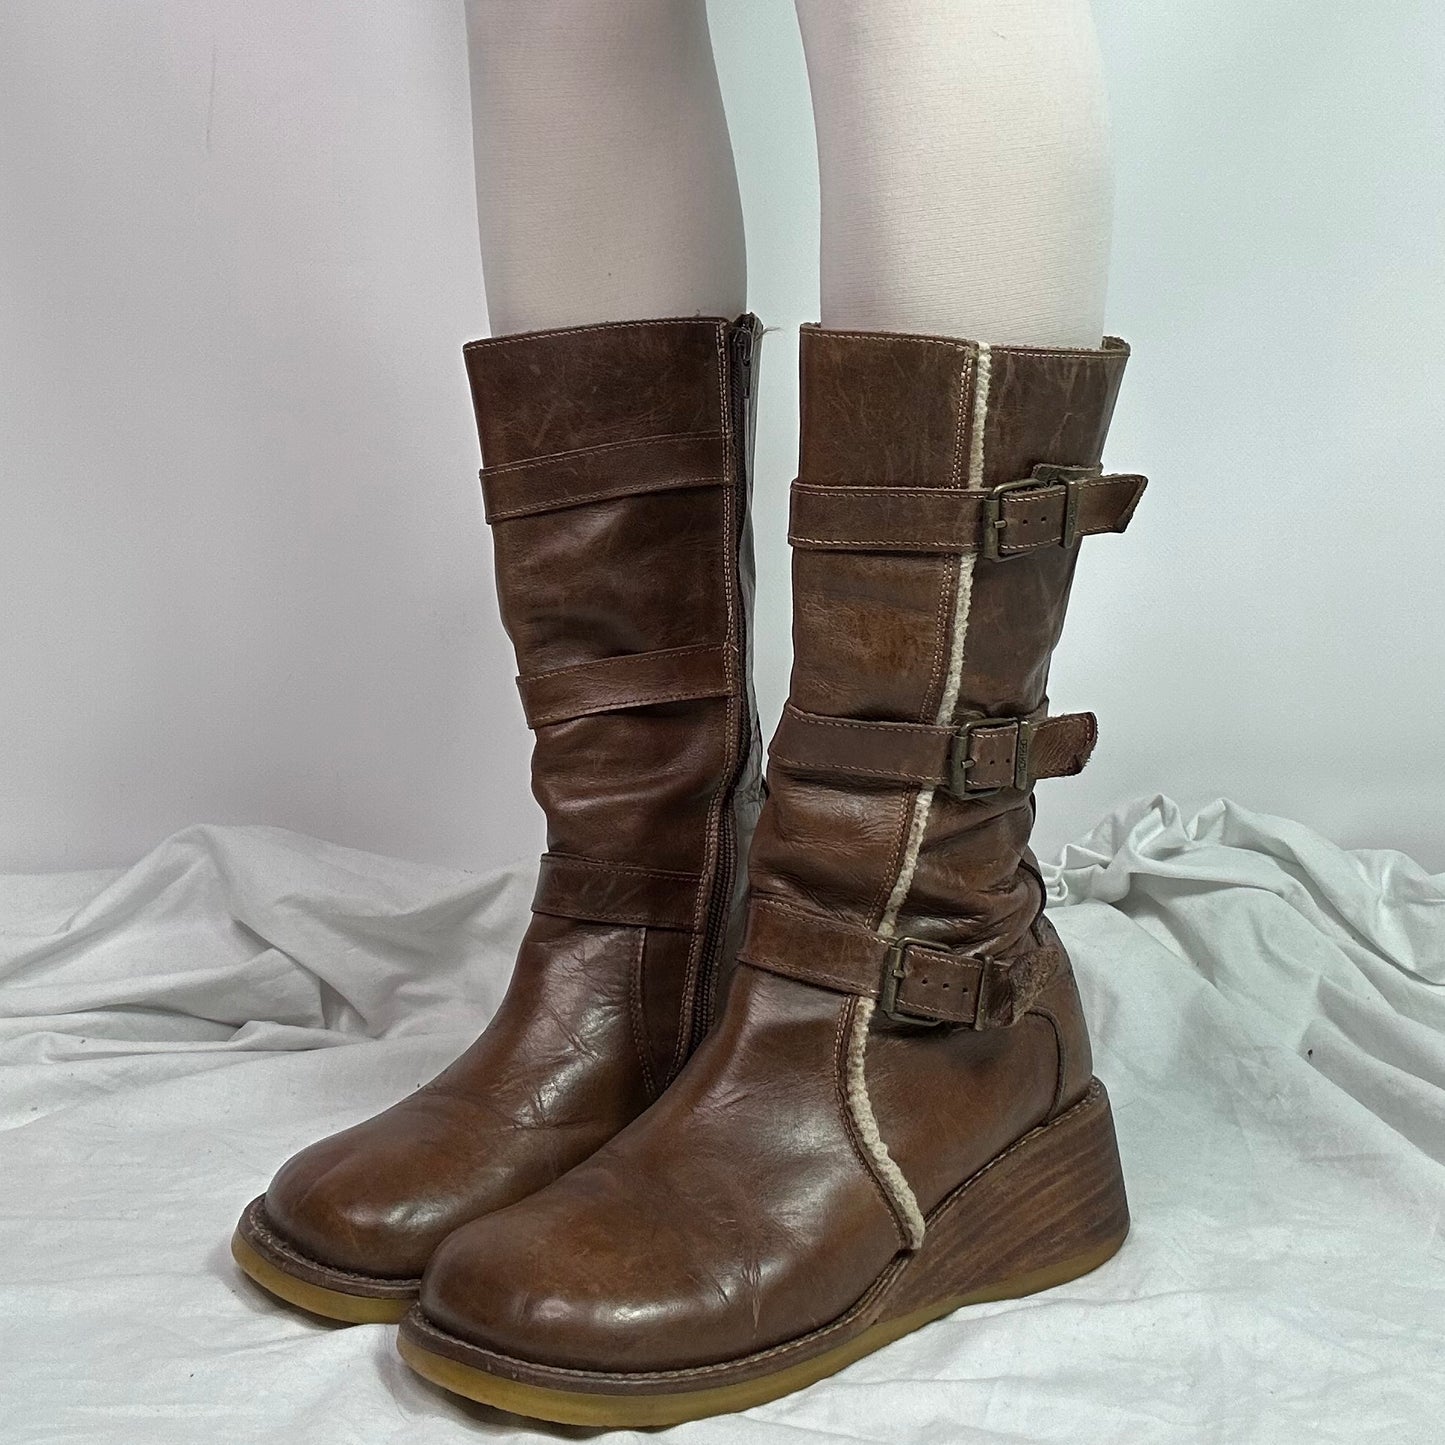 Destroy Vintage Leather Platform Boots